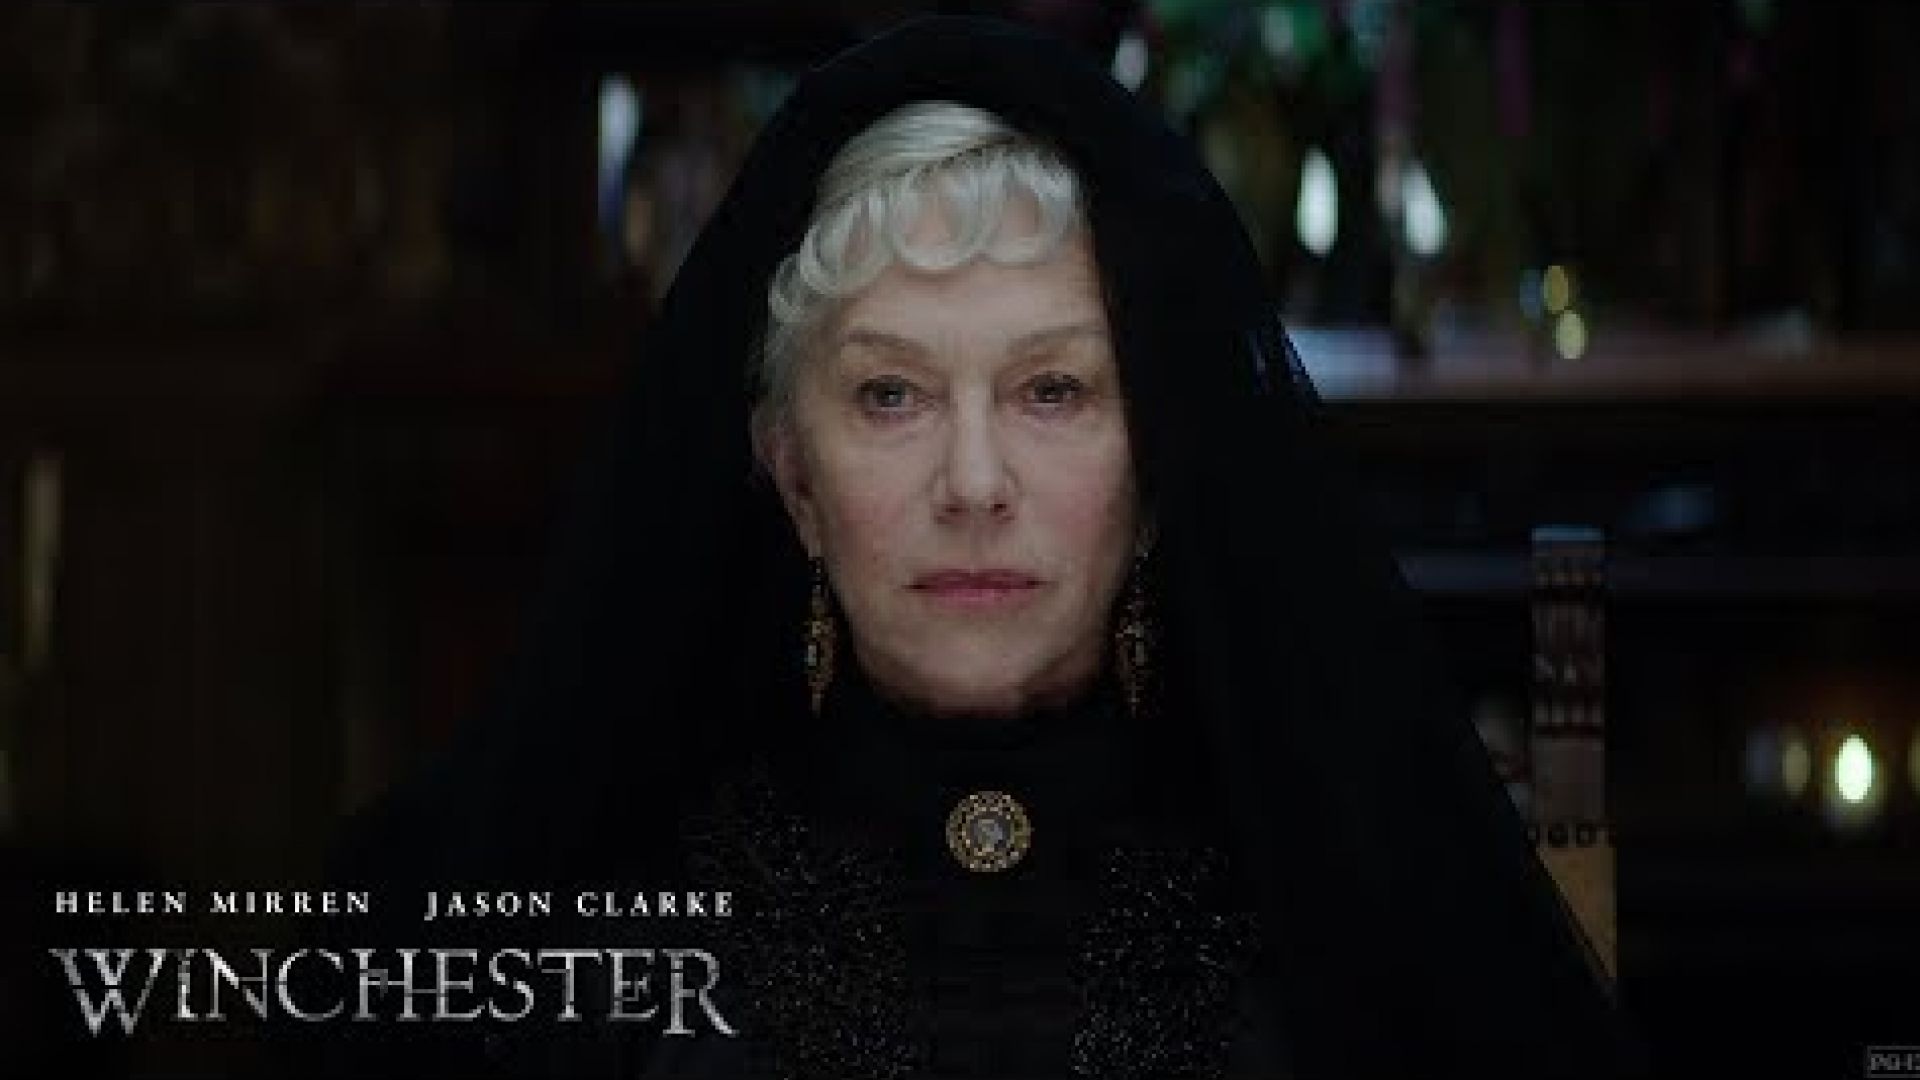 Winchester trailer: Helen Mirren stars in film about a 